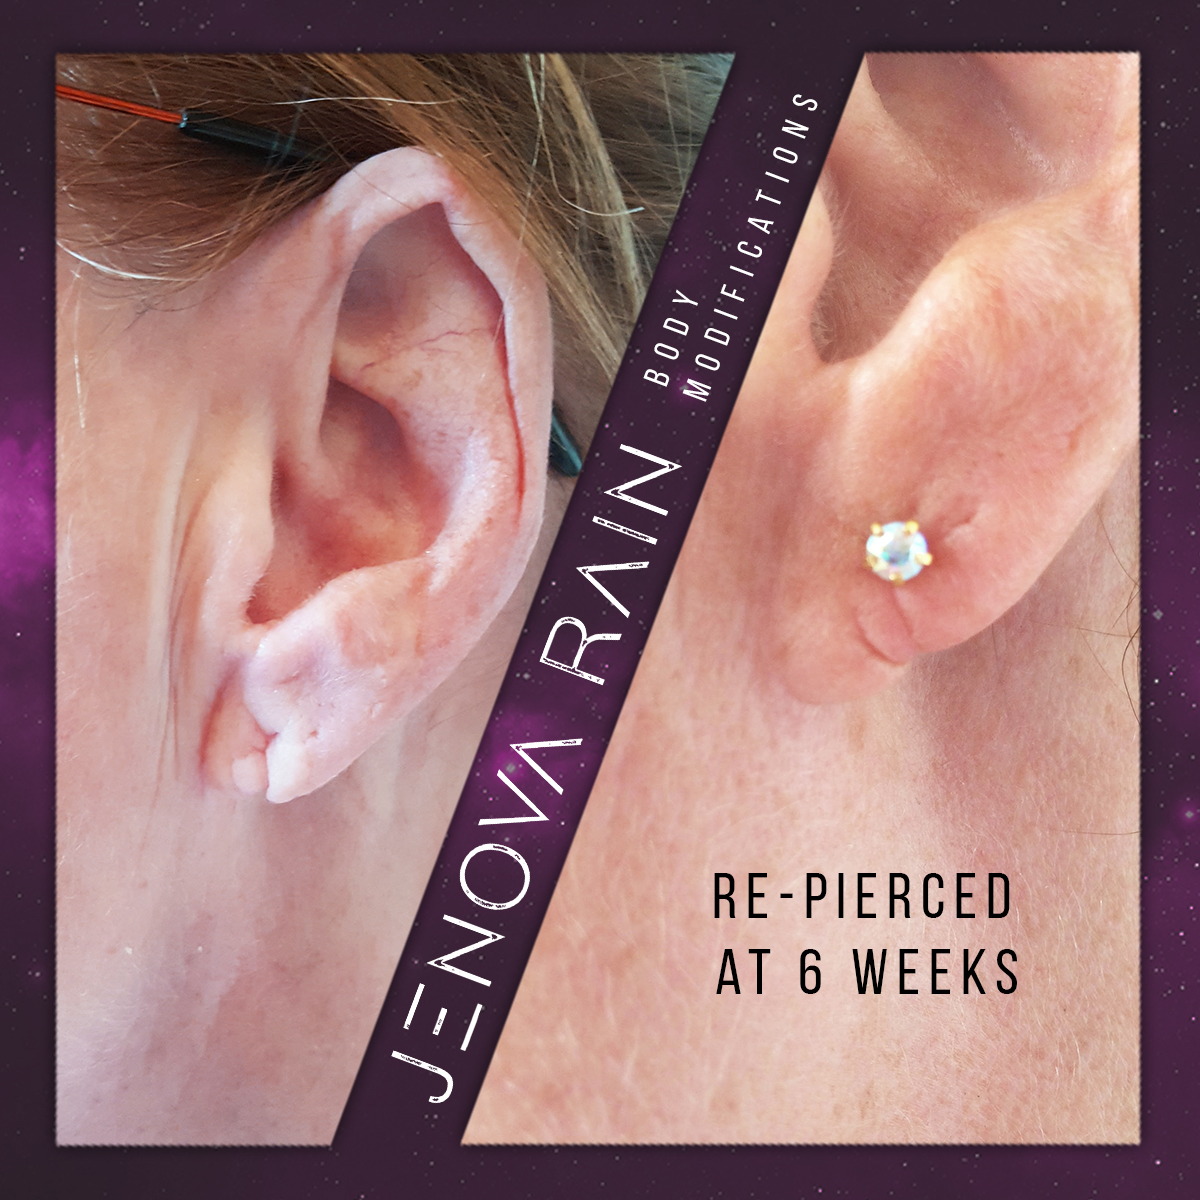 Ear Lobe Reconstruction UK by Jenova Rain